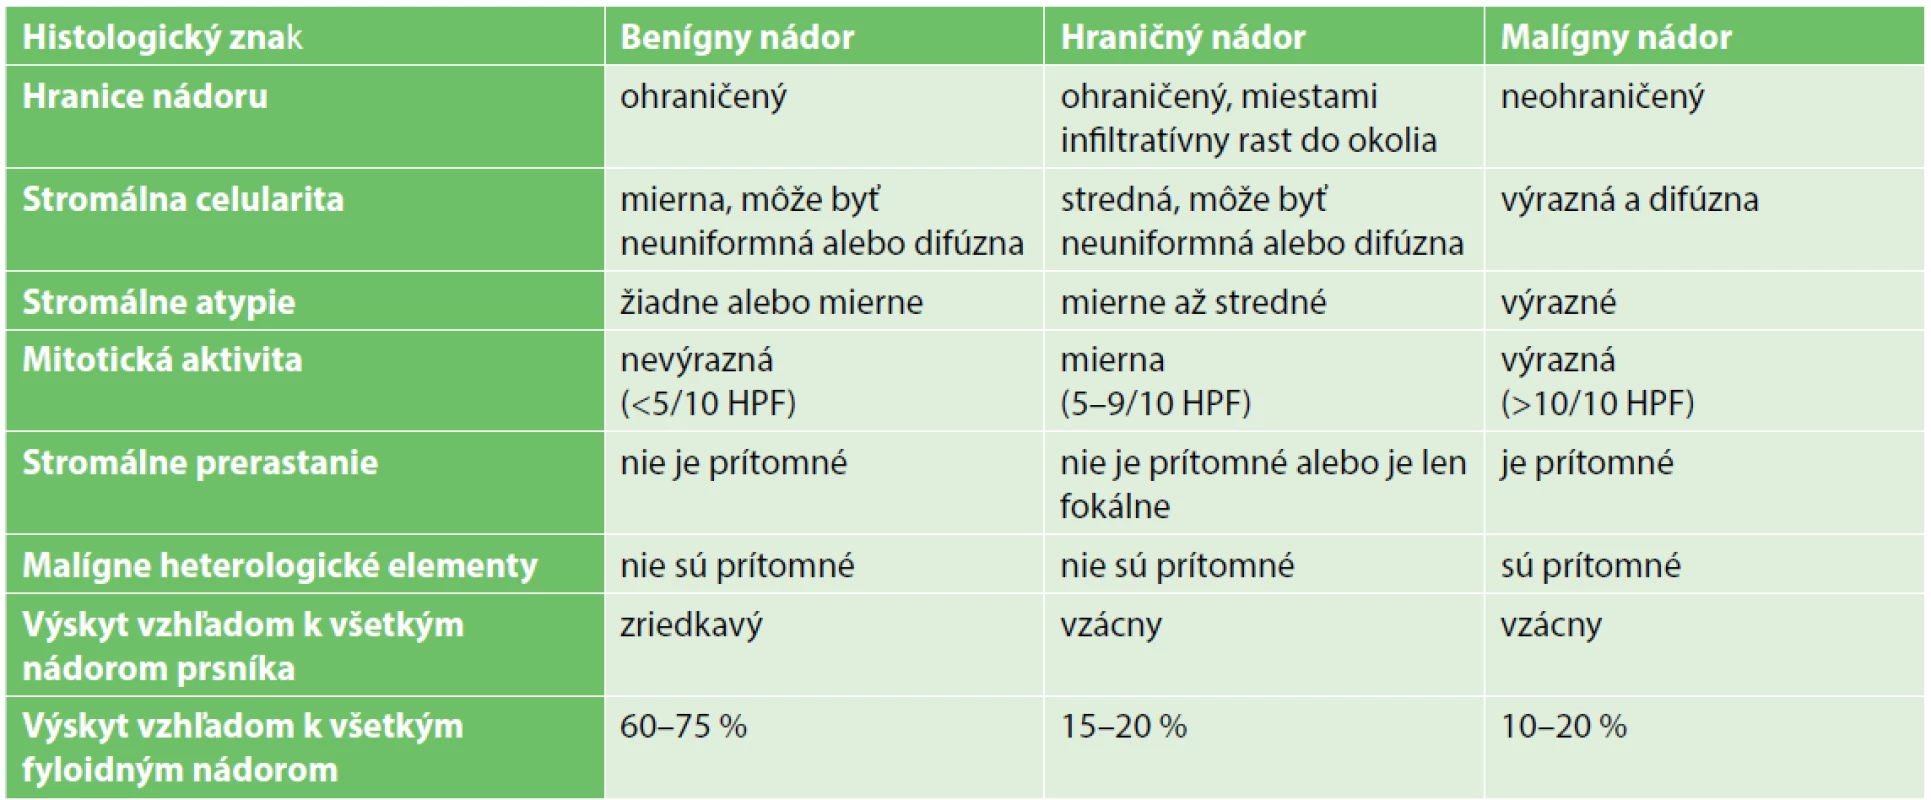 Kategorizácia fyloidných nádorov podľa histologických parametrov (tabuľka upravená podľa WHO klasifikácie)<br>
Tab.1. Categorization of the phyllodes tumours according to histological characteristics (modified by WHO classification)